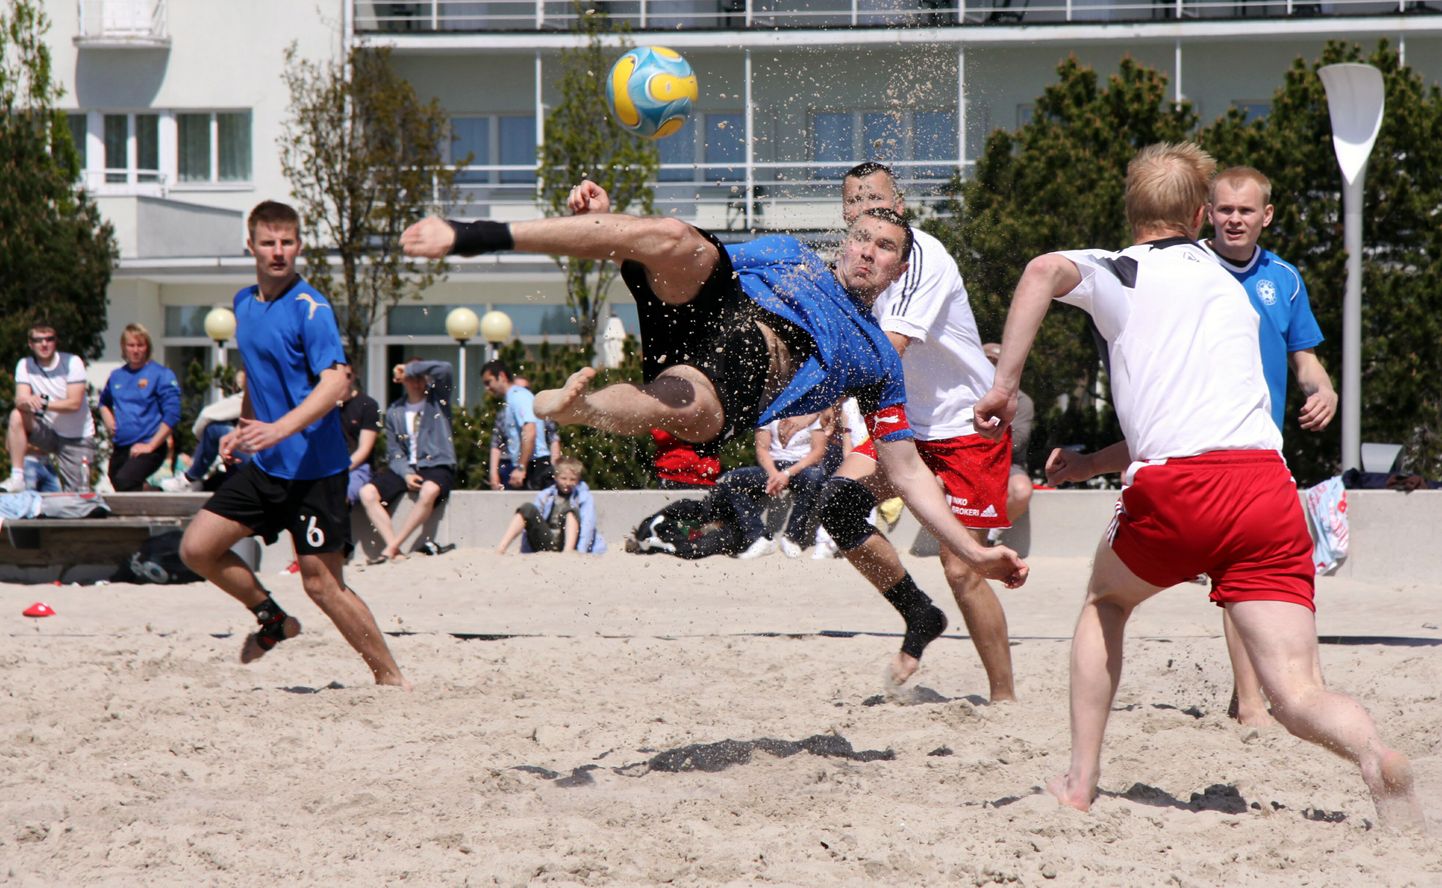 Augusti alguses ootatakse kõiki Varblasse rannajalgpali mängima. Pildil olevas matšis alistas Eesti koondis Pärnu rannas treeningmängus Läti 2:1.